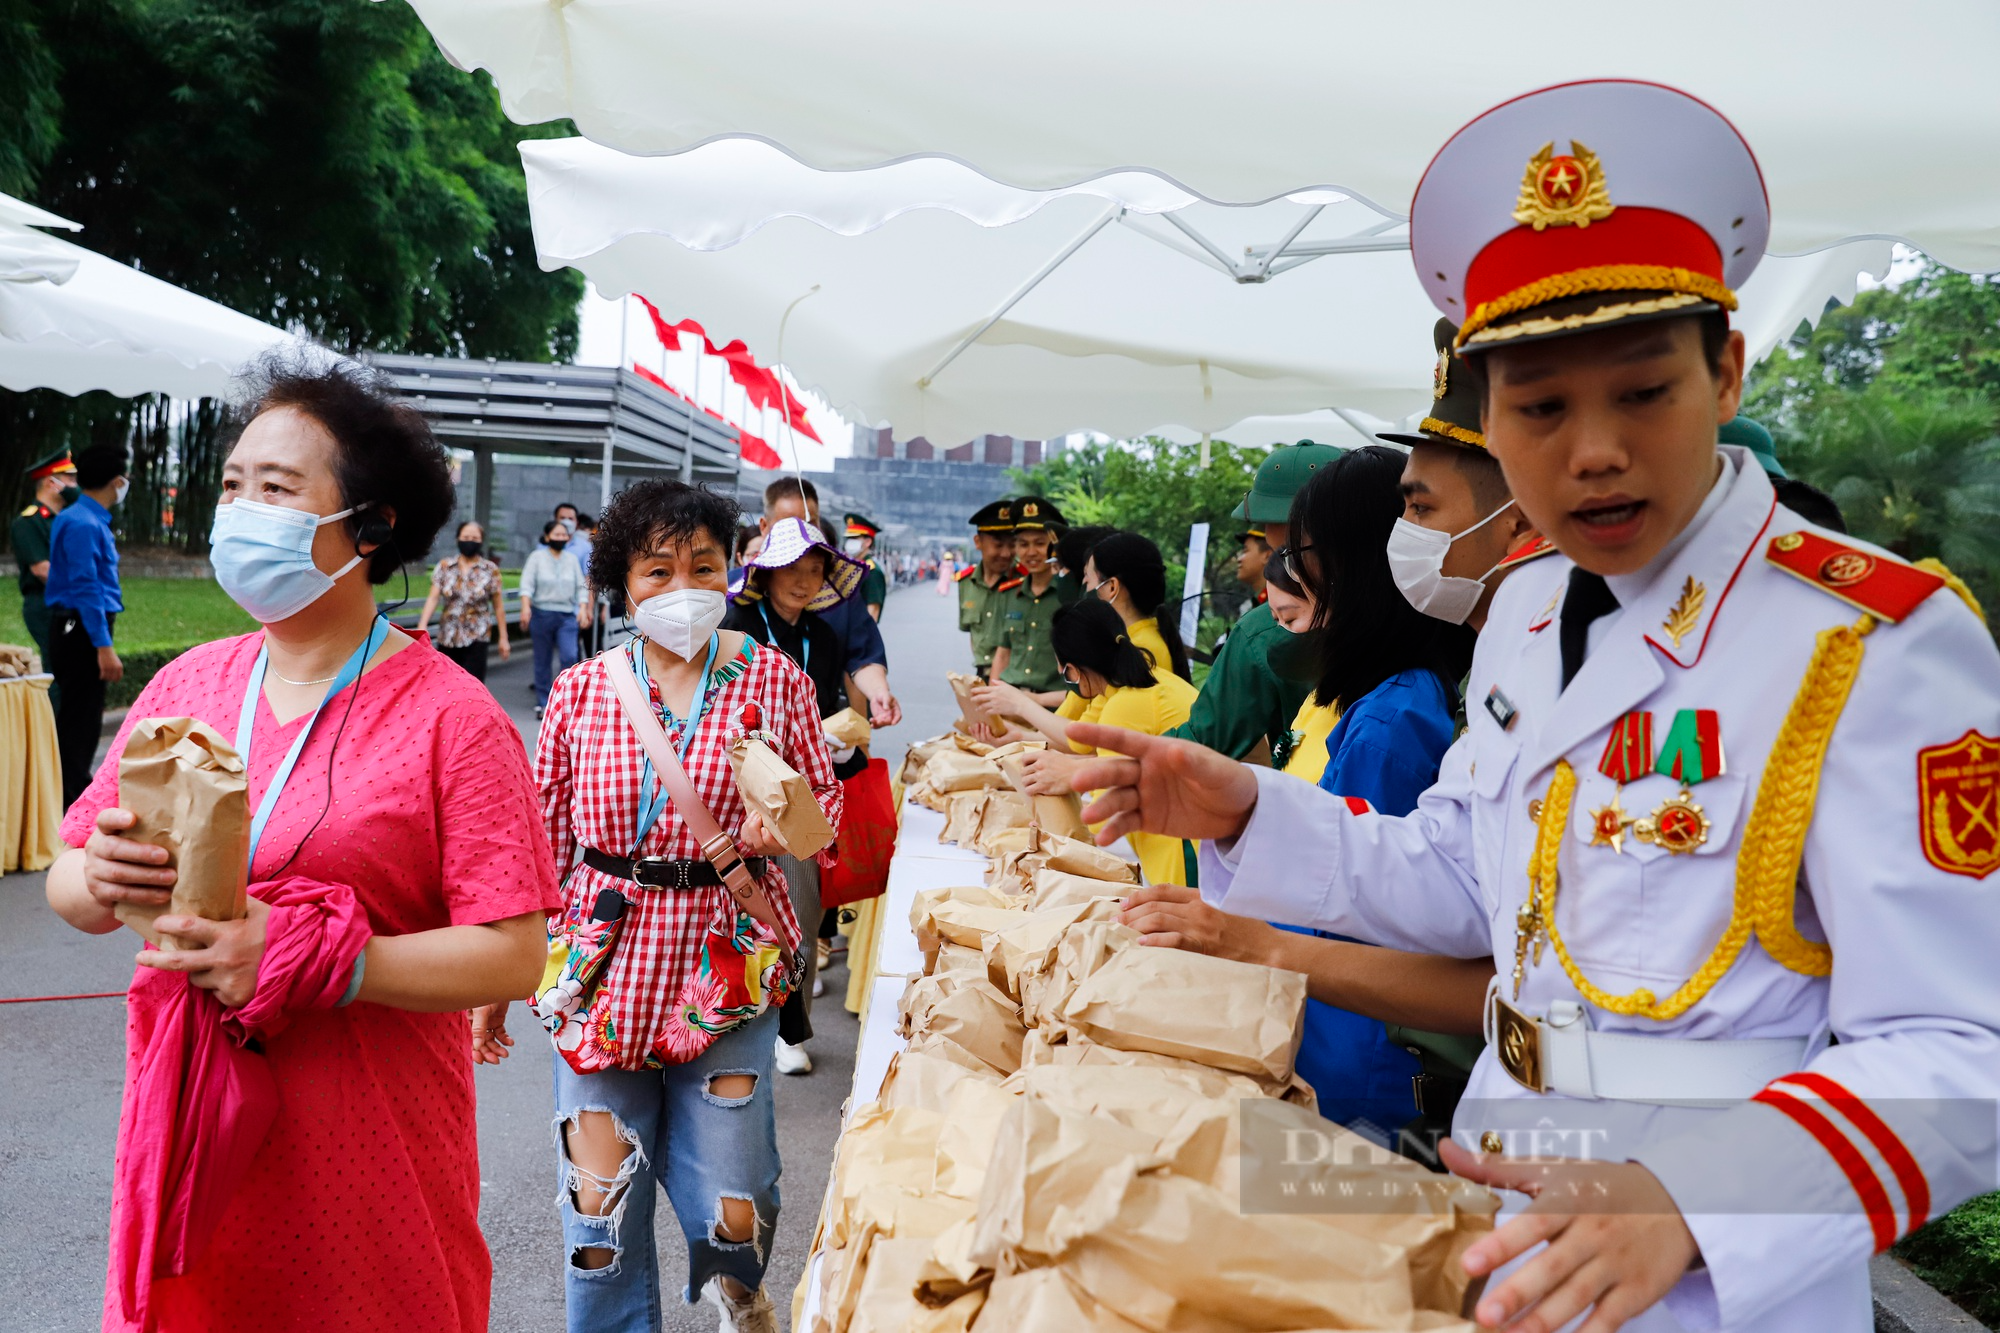 Hàng đoàn bạn bè quốc tế vào Lăng viếng Chủ tịch Hồ Chí Minh trong ngày sinh nhật Người  - Ảnh 3.